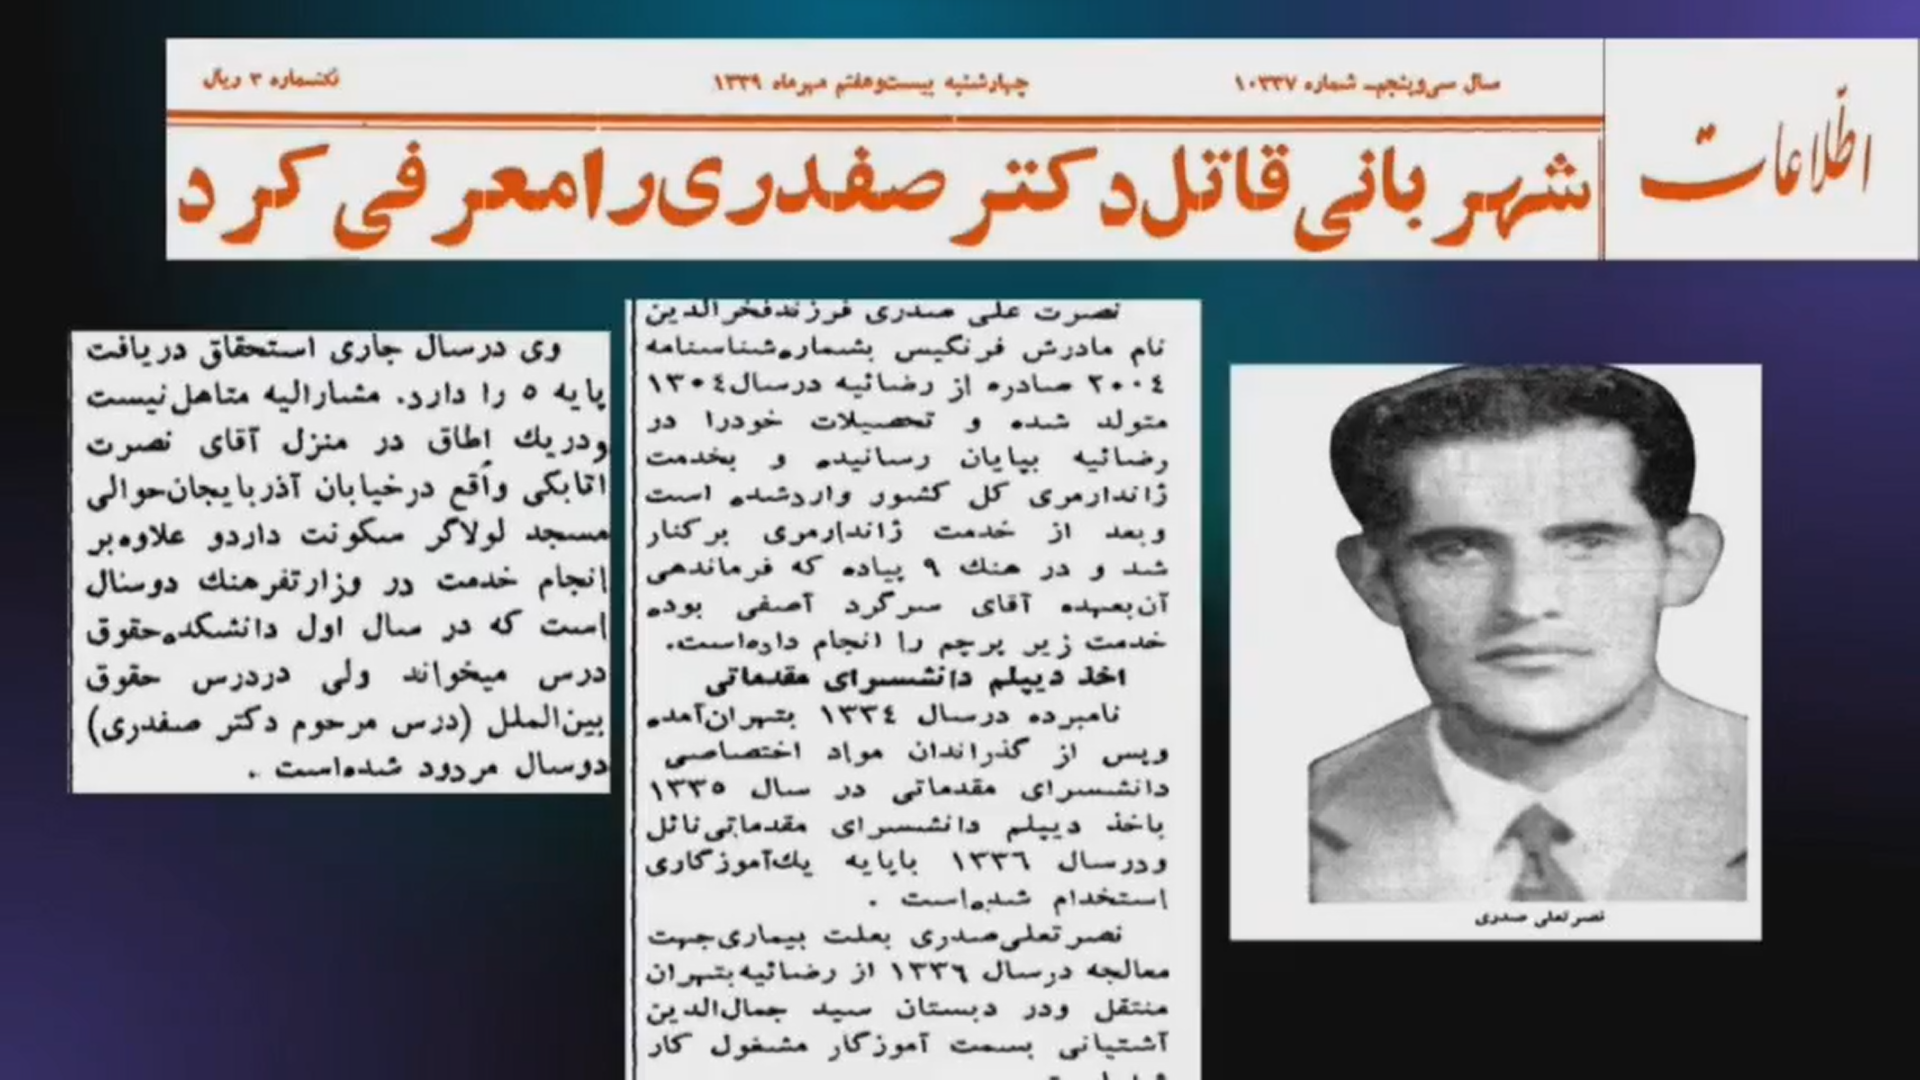 تصویر روزنامه اطلاعات در خصوص قاتل دکتر صفدری